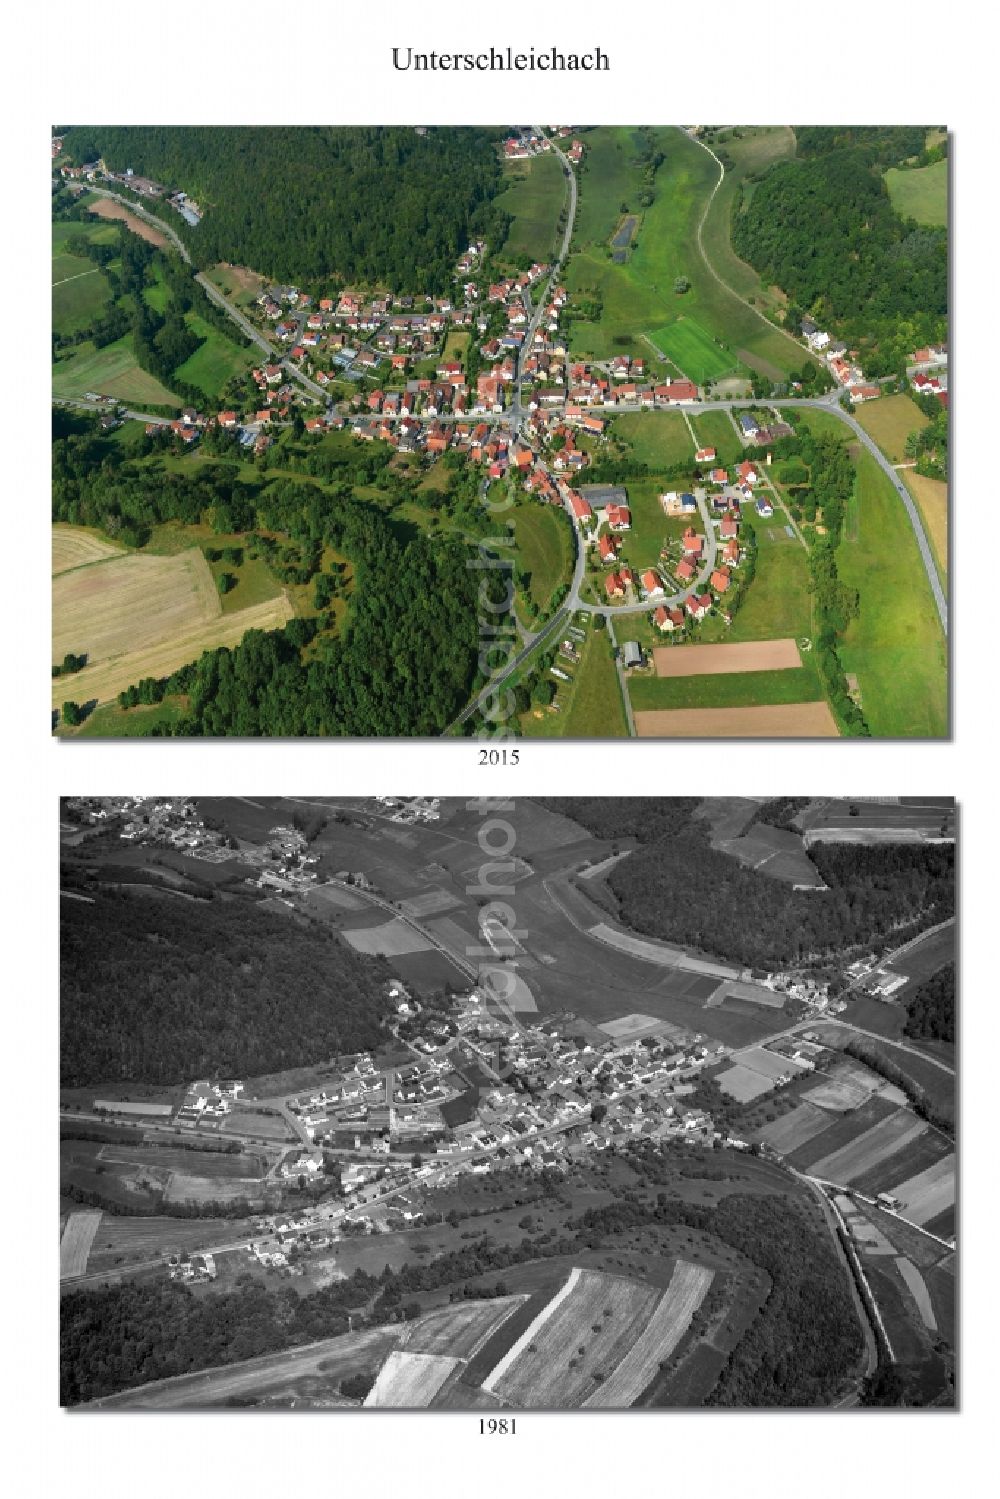 Aerial photograph Unterschleichach - 1981 and 2015 village - view change of Unterschleichach in the state Bavaria